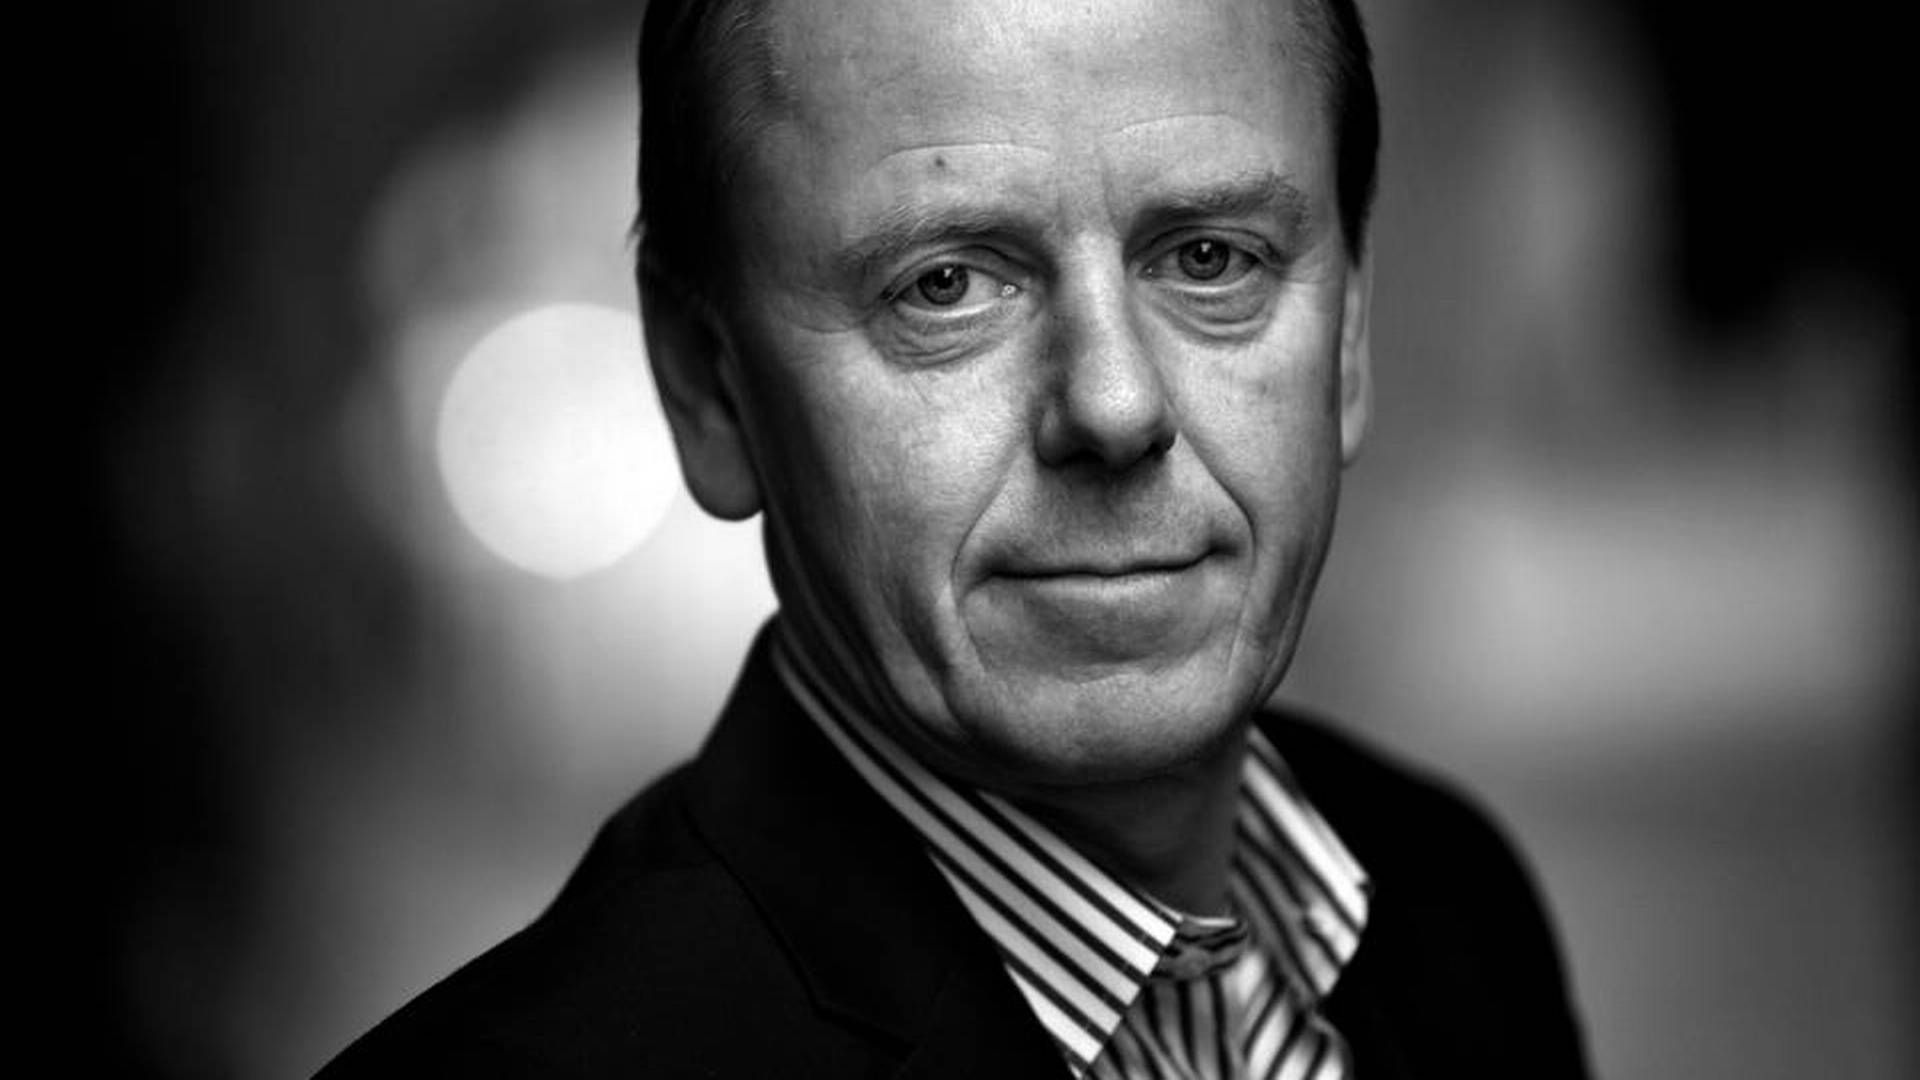 Formand Jørgen Buhl Rasmussen fratræder ved næste generalforsamling i Novozymes. | Foto: Jacob Ehrbahn